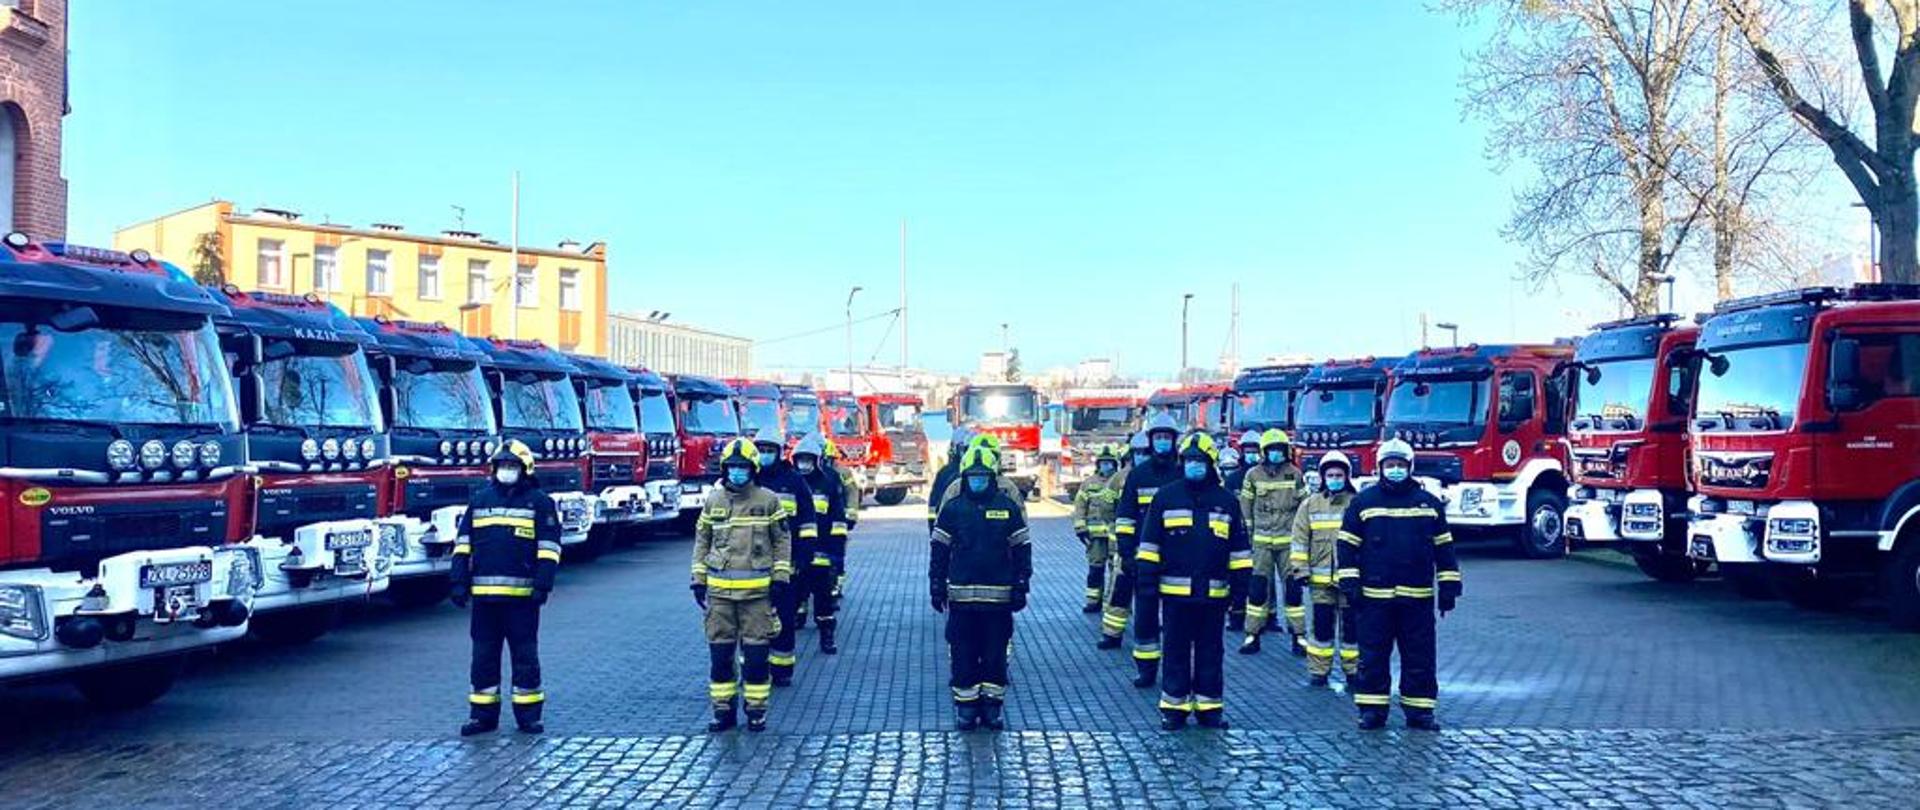 Na zdjęciu kilkunastu strażaków w umundurowaniu bojowym i w hełmach stoi w kilku rzędach między dwoma rzędami nowych samochodów ratowniczo-gaśniczych.